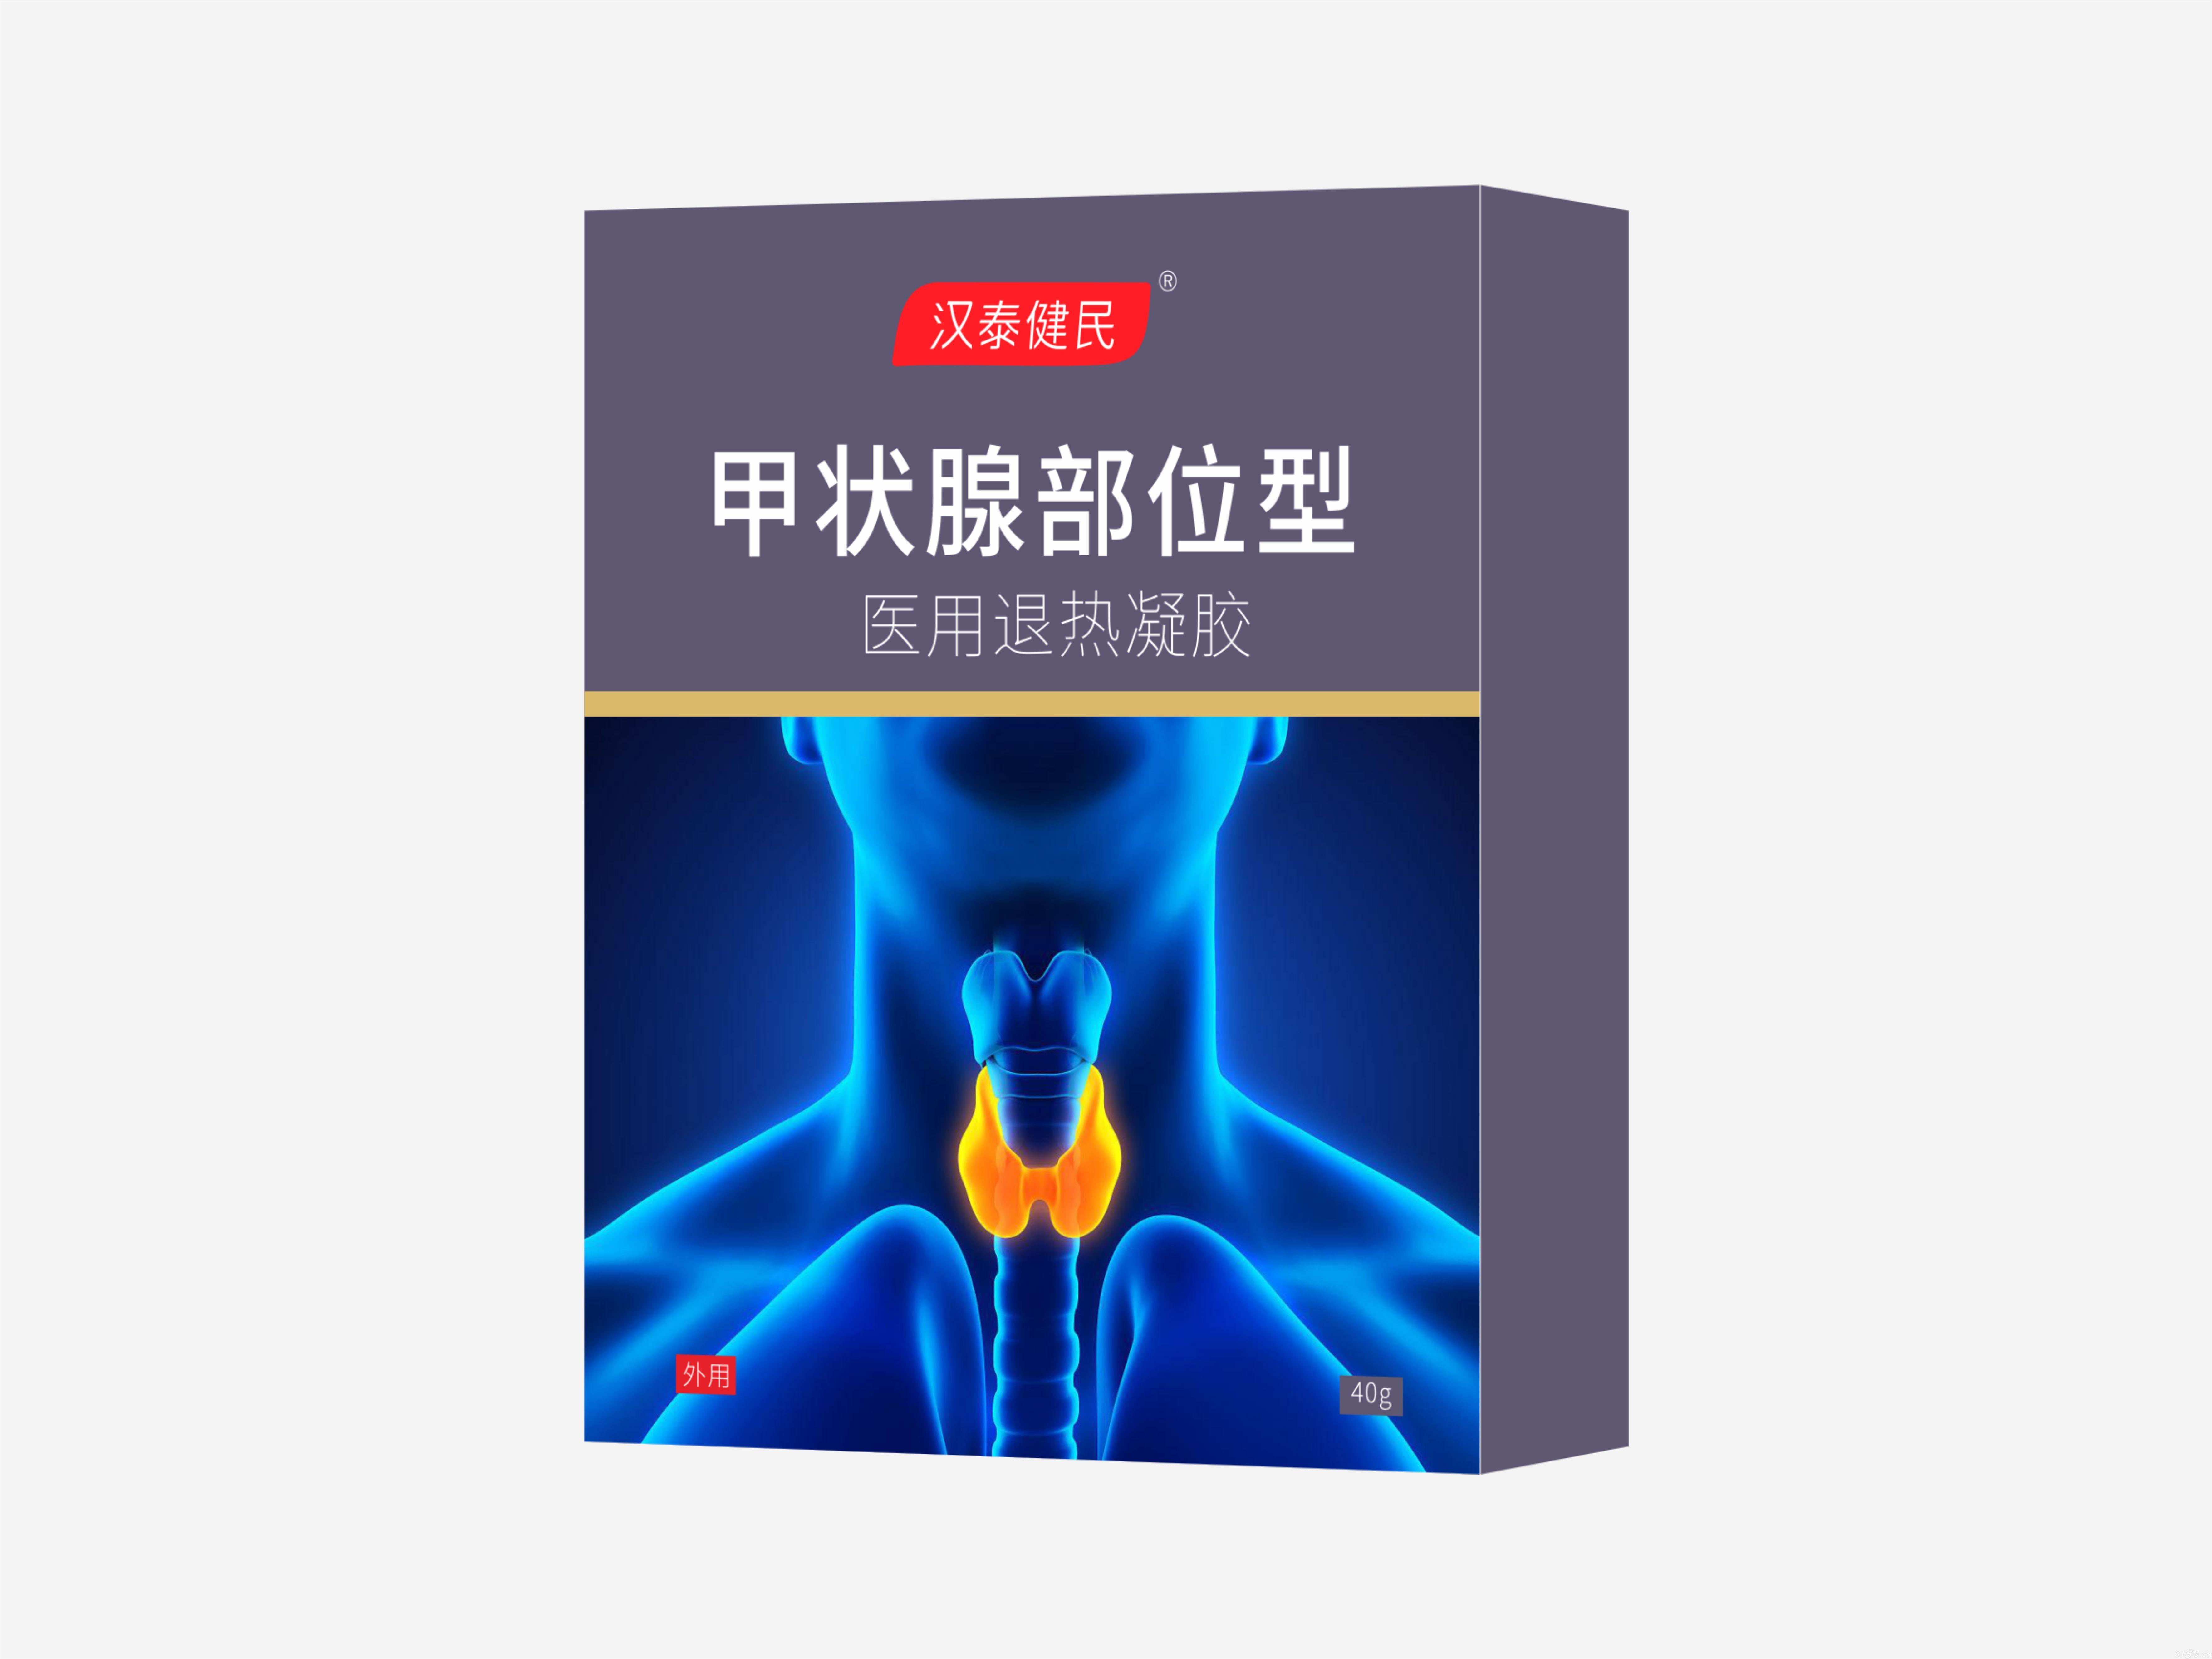 汉泰健民®医用退热凝胶 甲状腺部位型招商